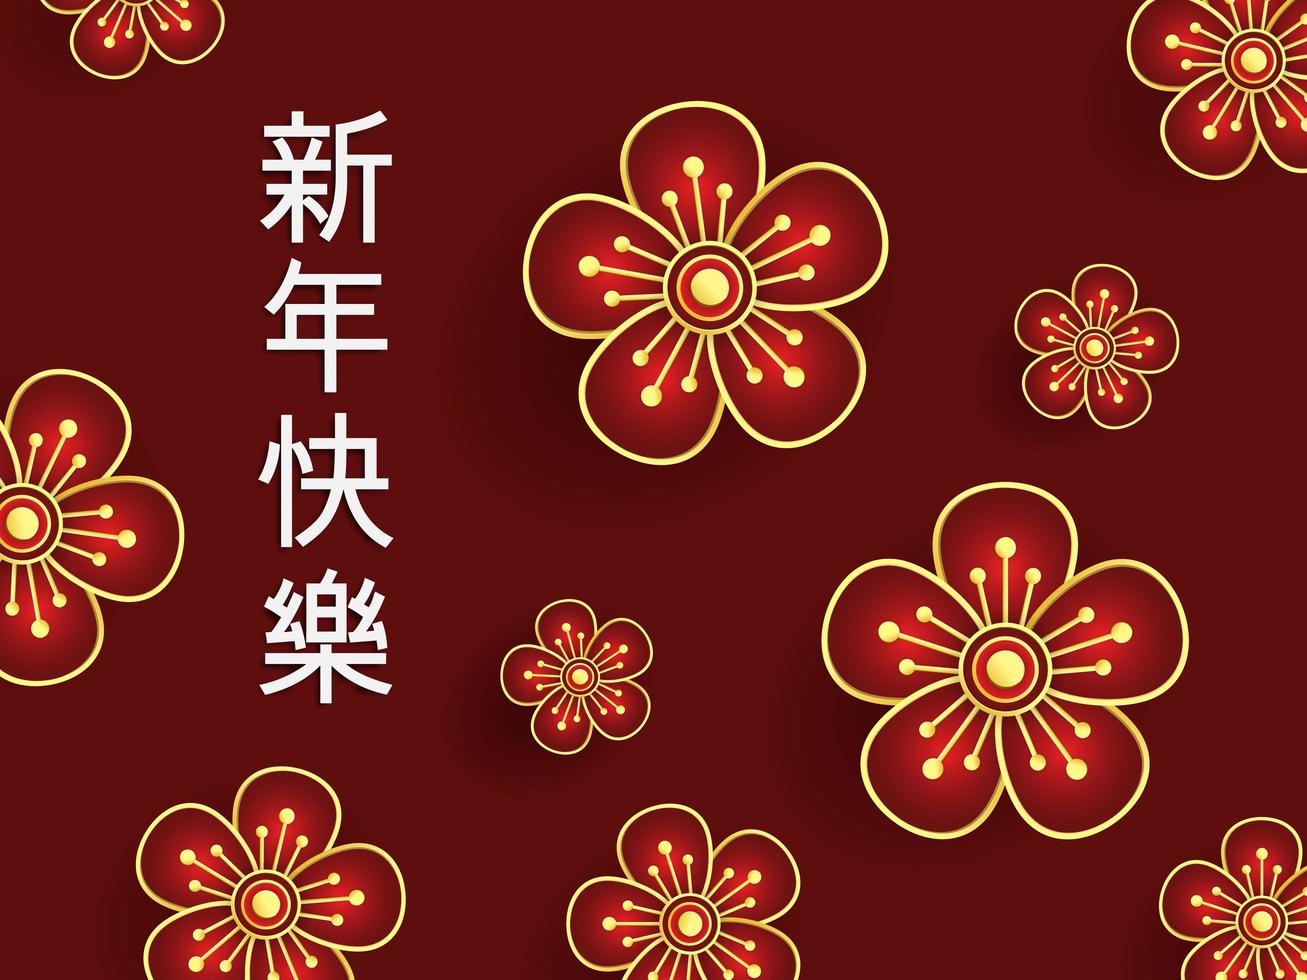 röda blommor illustration med kinesisk kalligrafi i röd bakgrund vektor